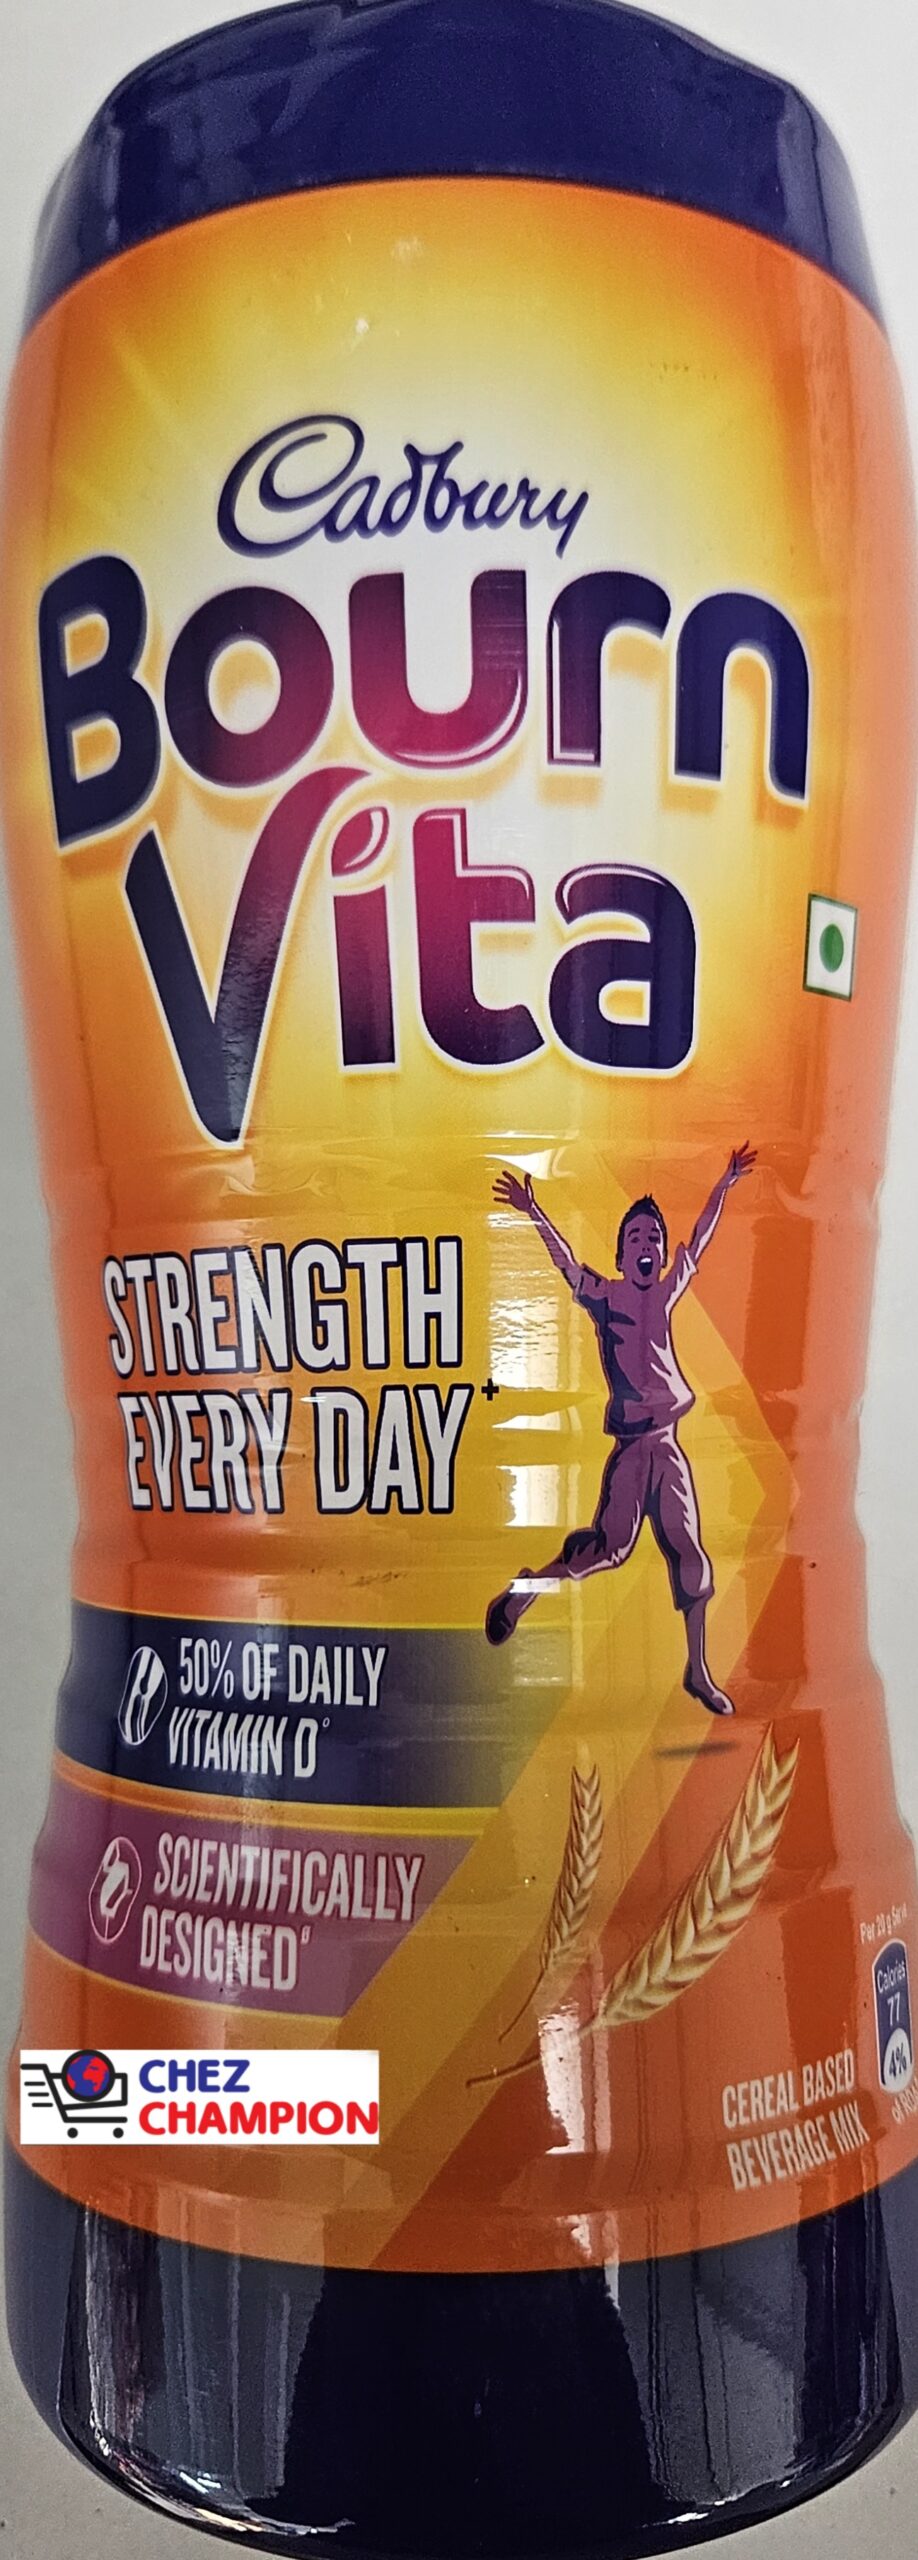 Cadbury Bourn vita strength every day – 500g